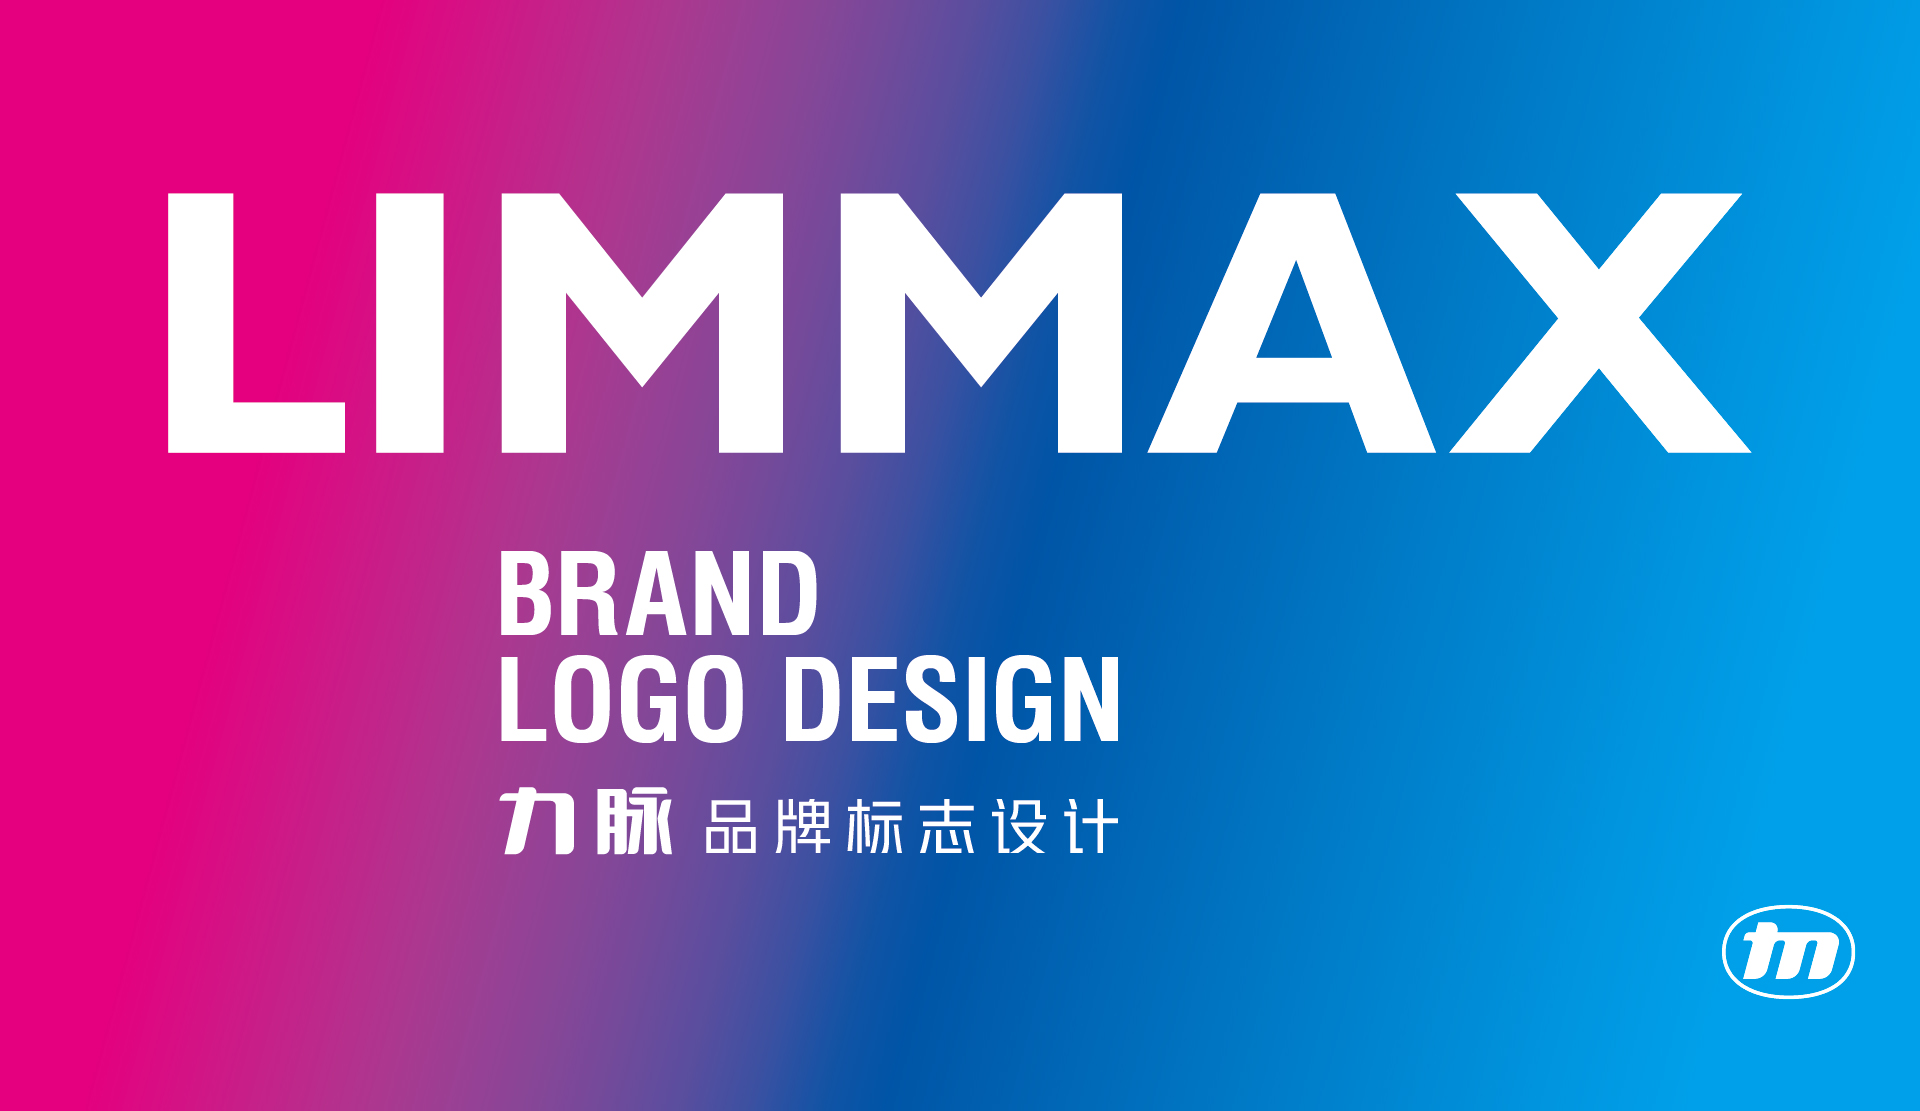 Limmax力脉汽配品牌LOGO_VI设计 20230902 通正设计提供-01